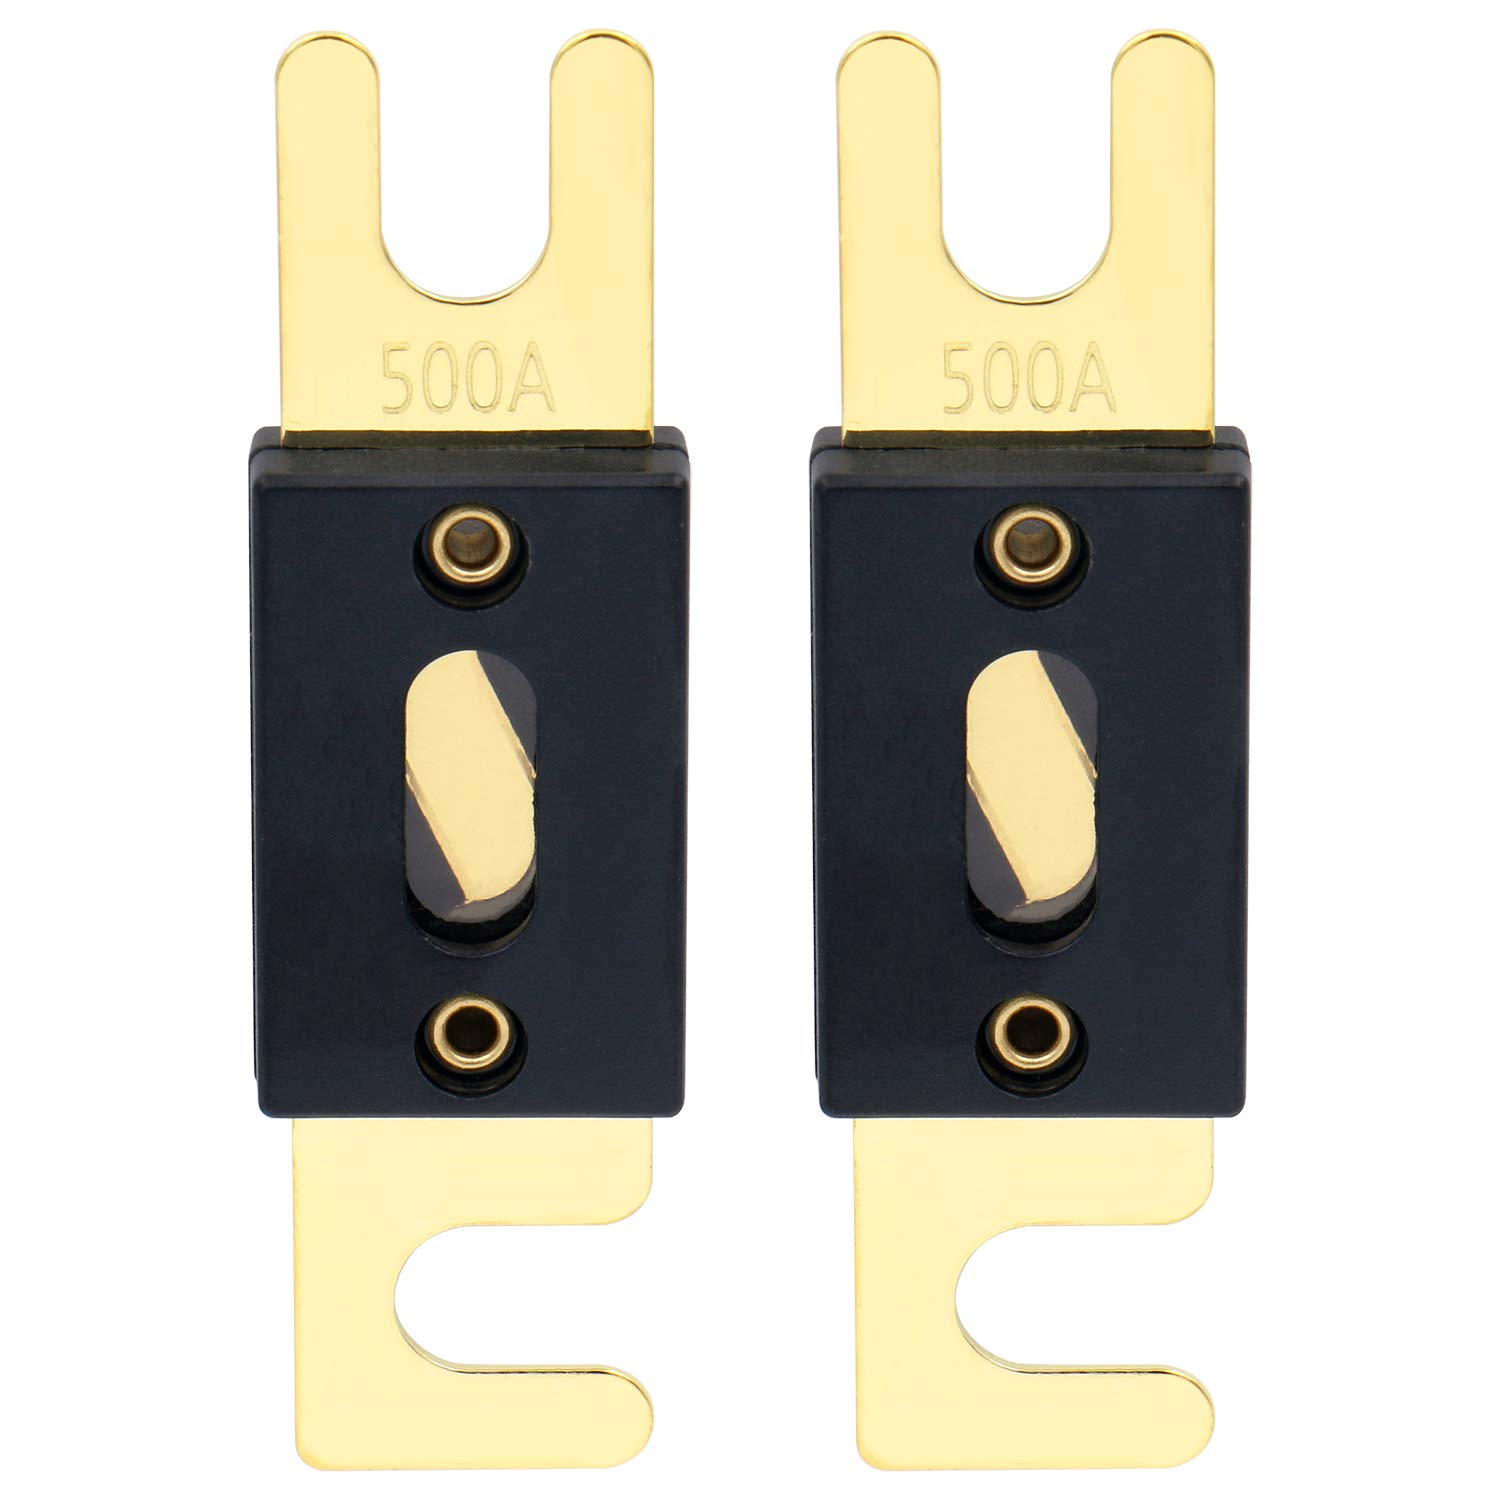 Heschen ANL-Sicherung, 500 A, für Kfz-Audiosysteme, goldfarben/schwarz, 2er-Pack, ANL-500 von Heschen